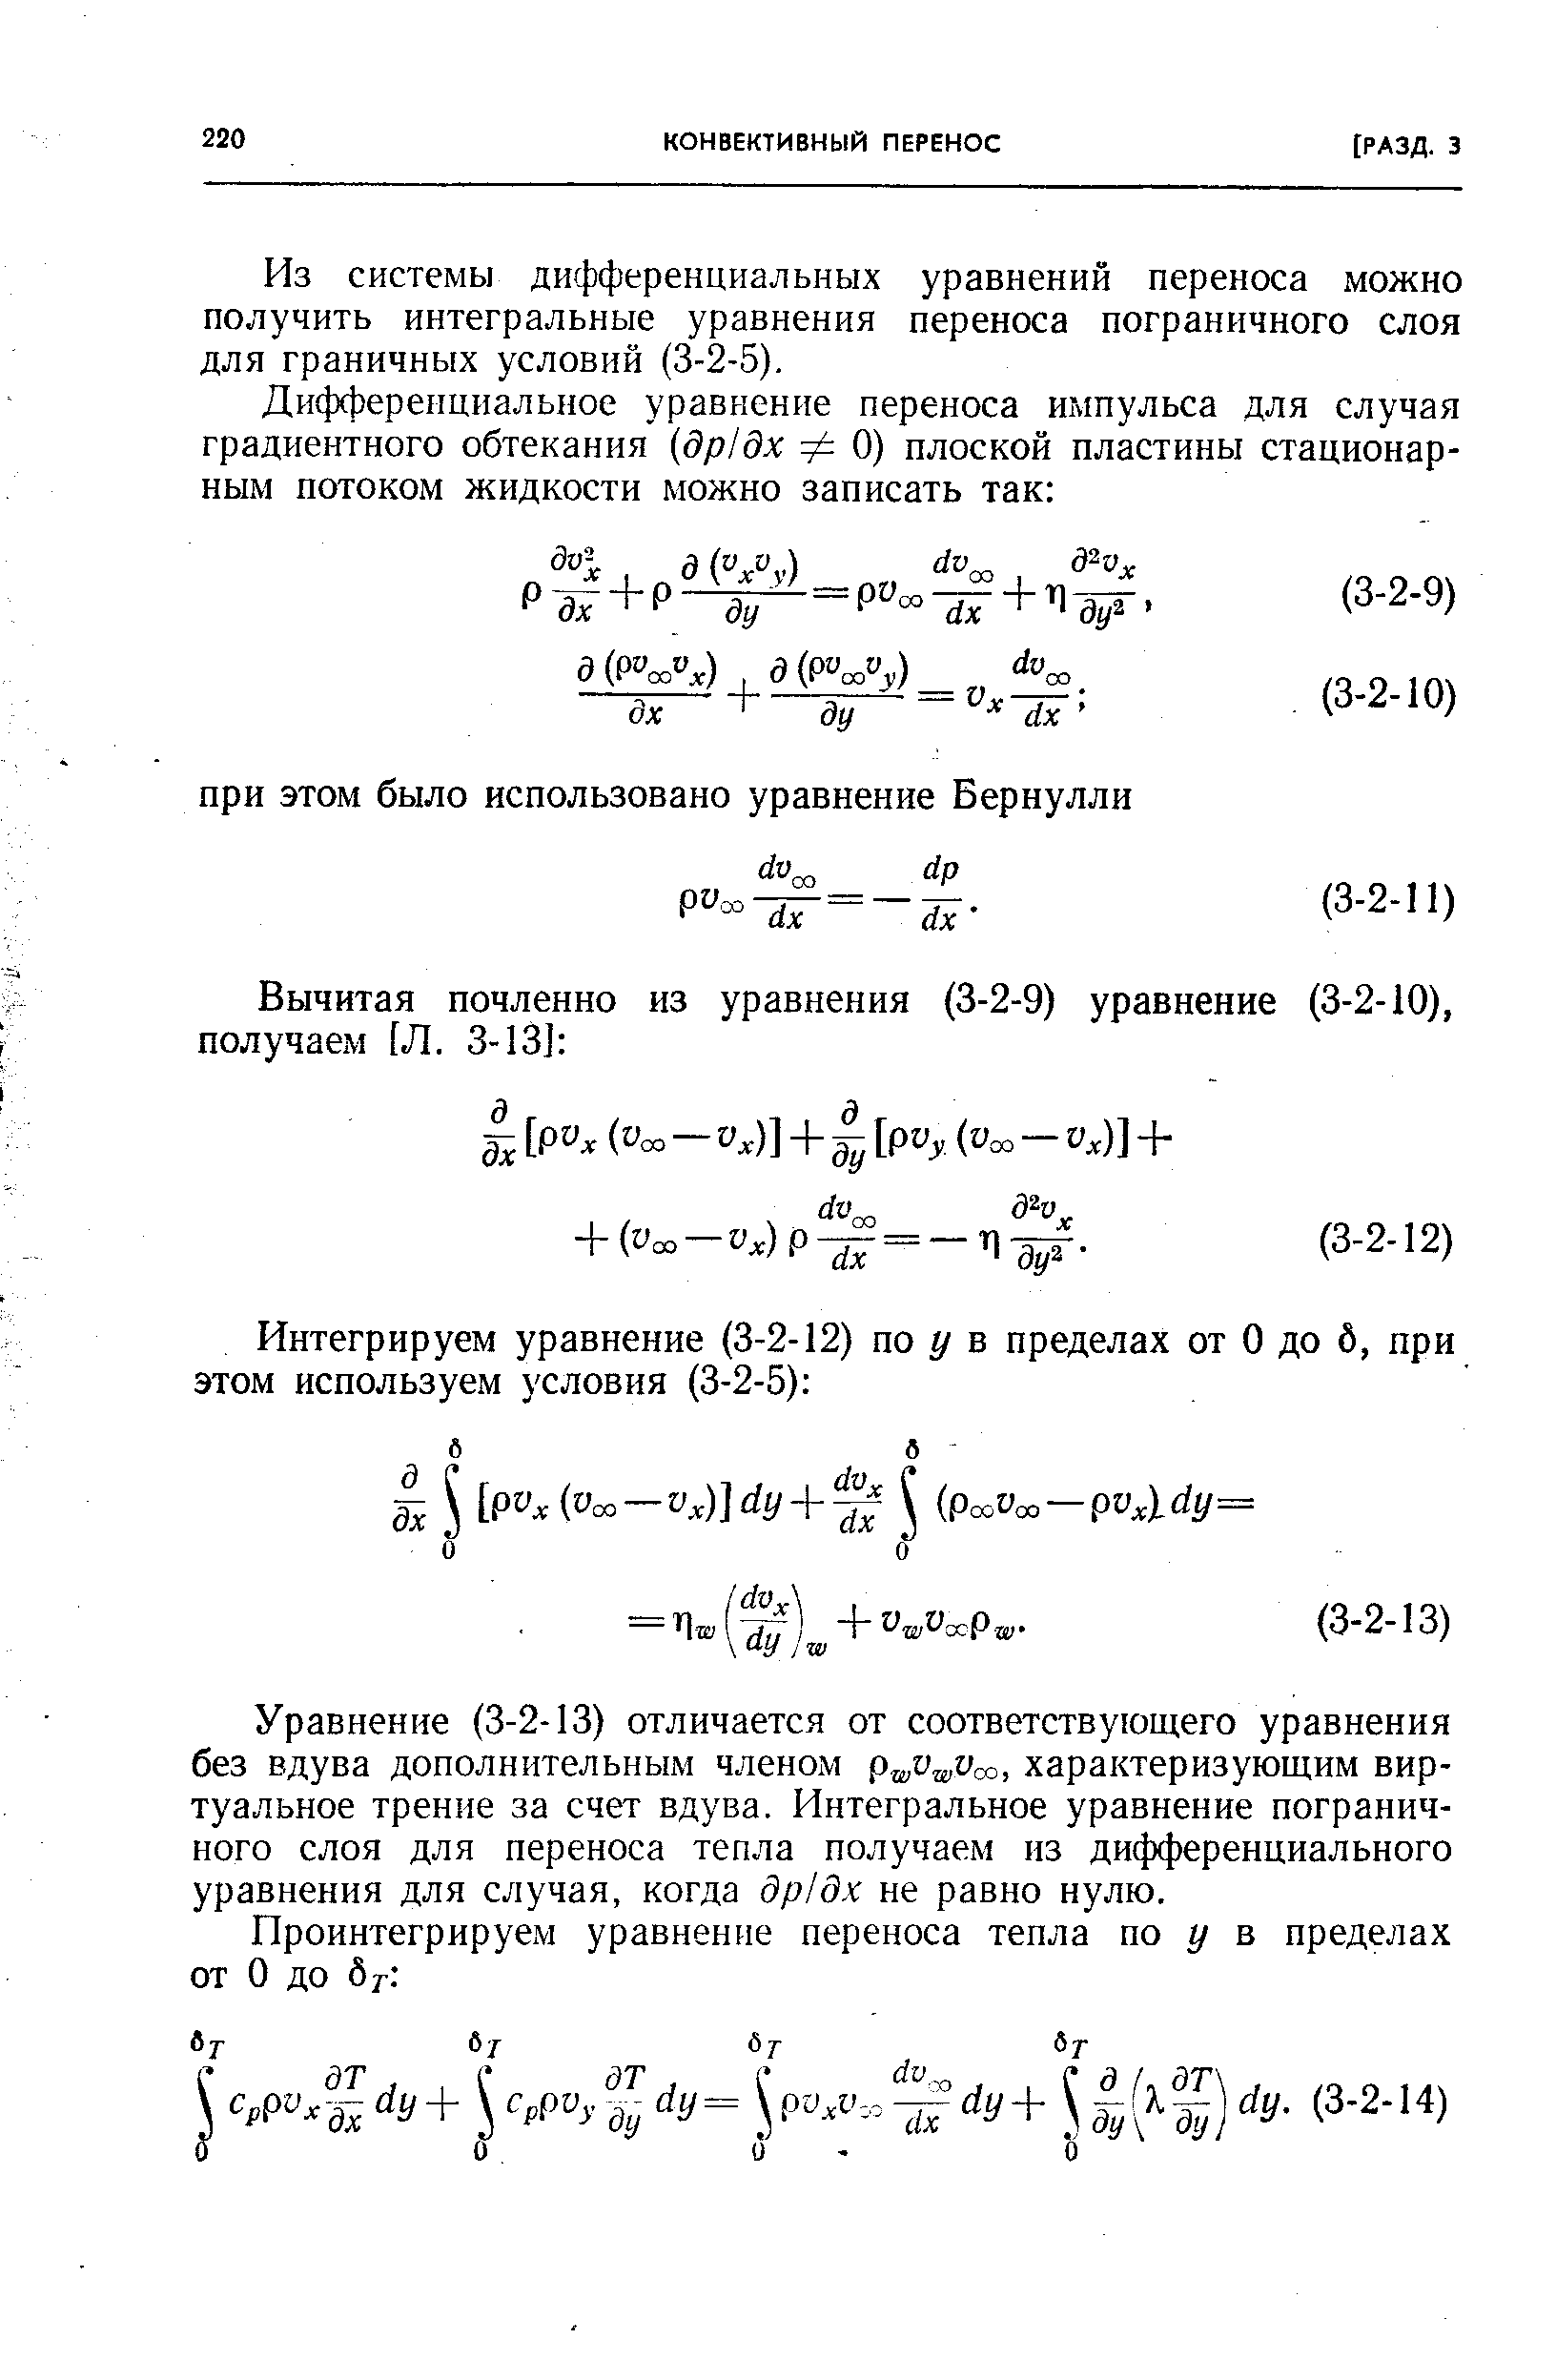 Из системы дифференциальных уравнений переноса можно получить интегральные уравнения переноса пограничного слоя для граничных условий (3-2-5).
